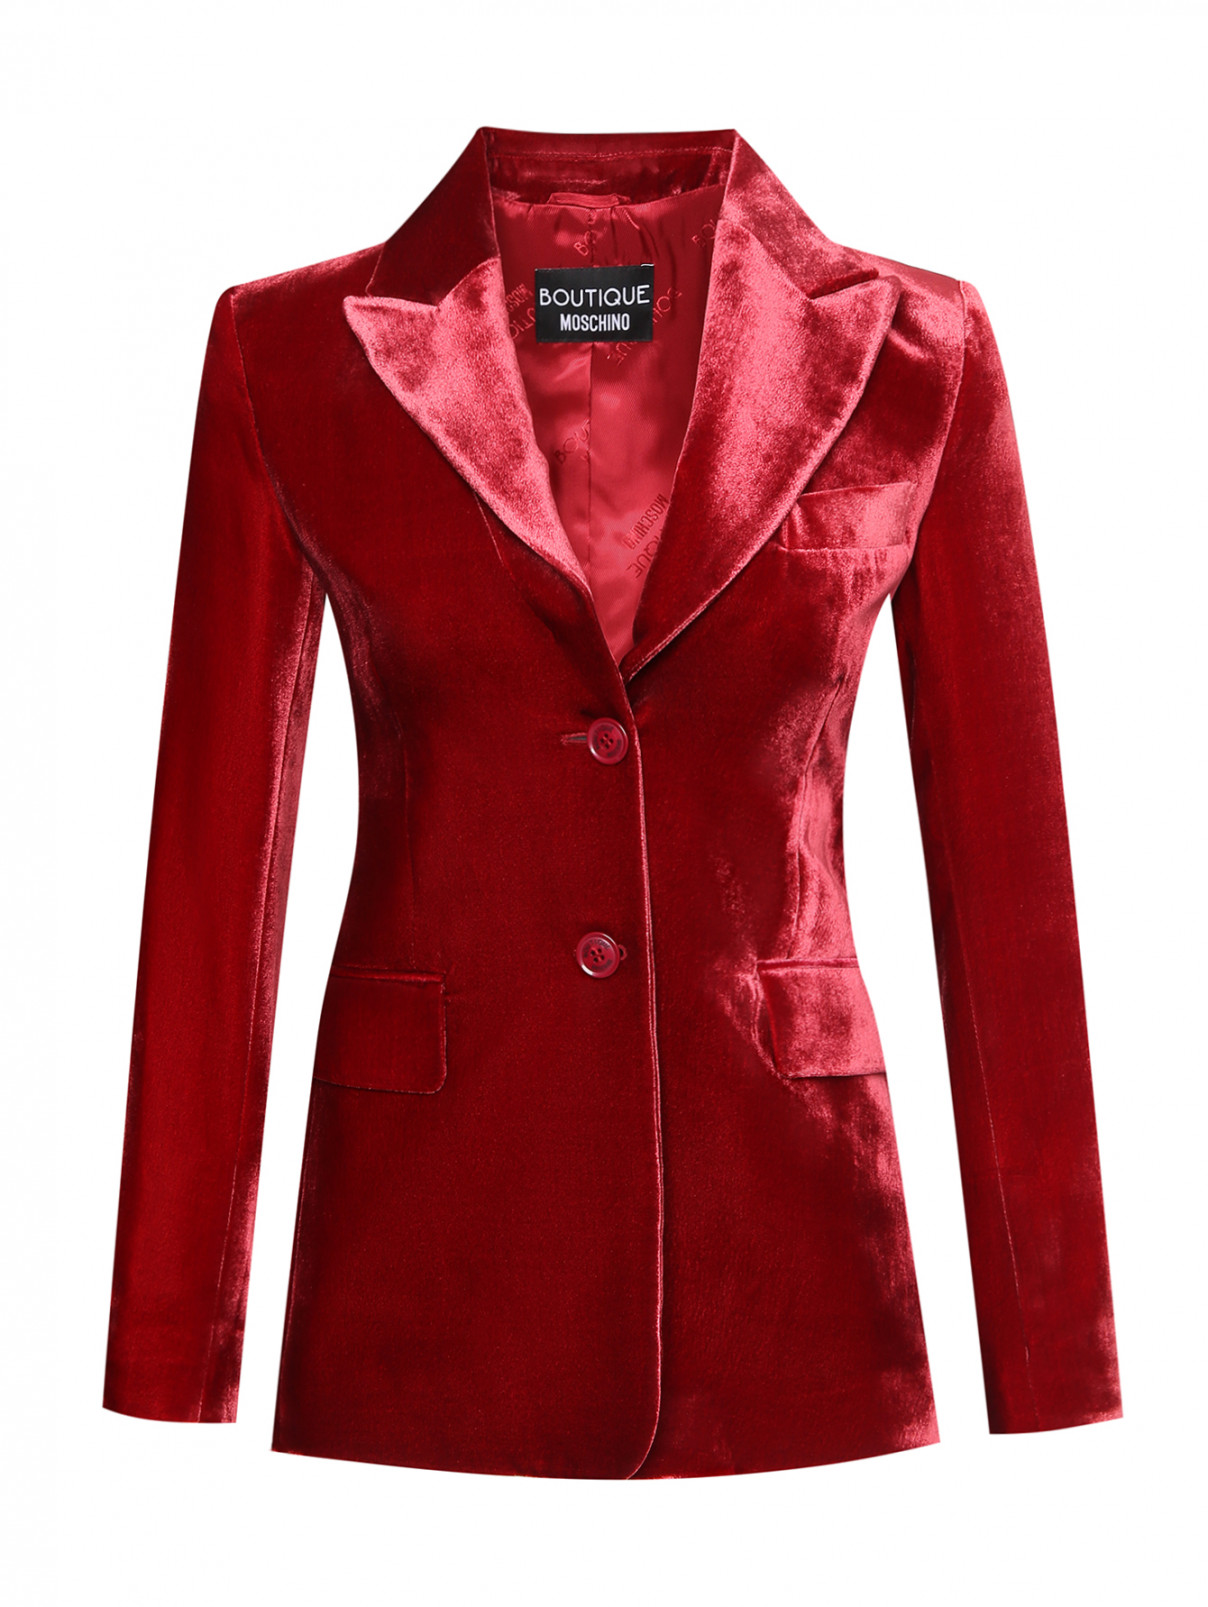 Однобортный жакет из вискозы и шелка Moschino Boutique  –  Общий вид  – Цвет:  Красный